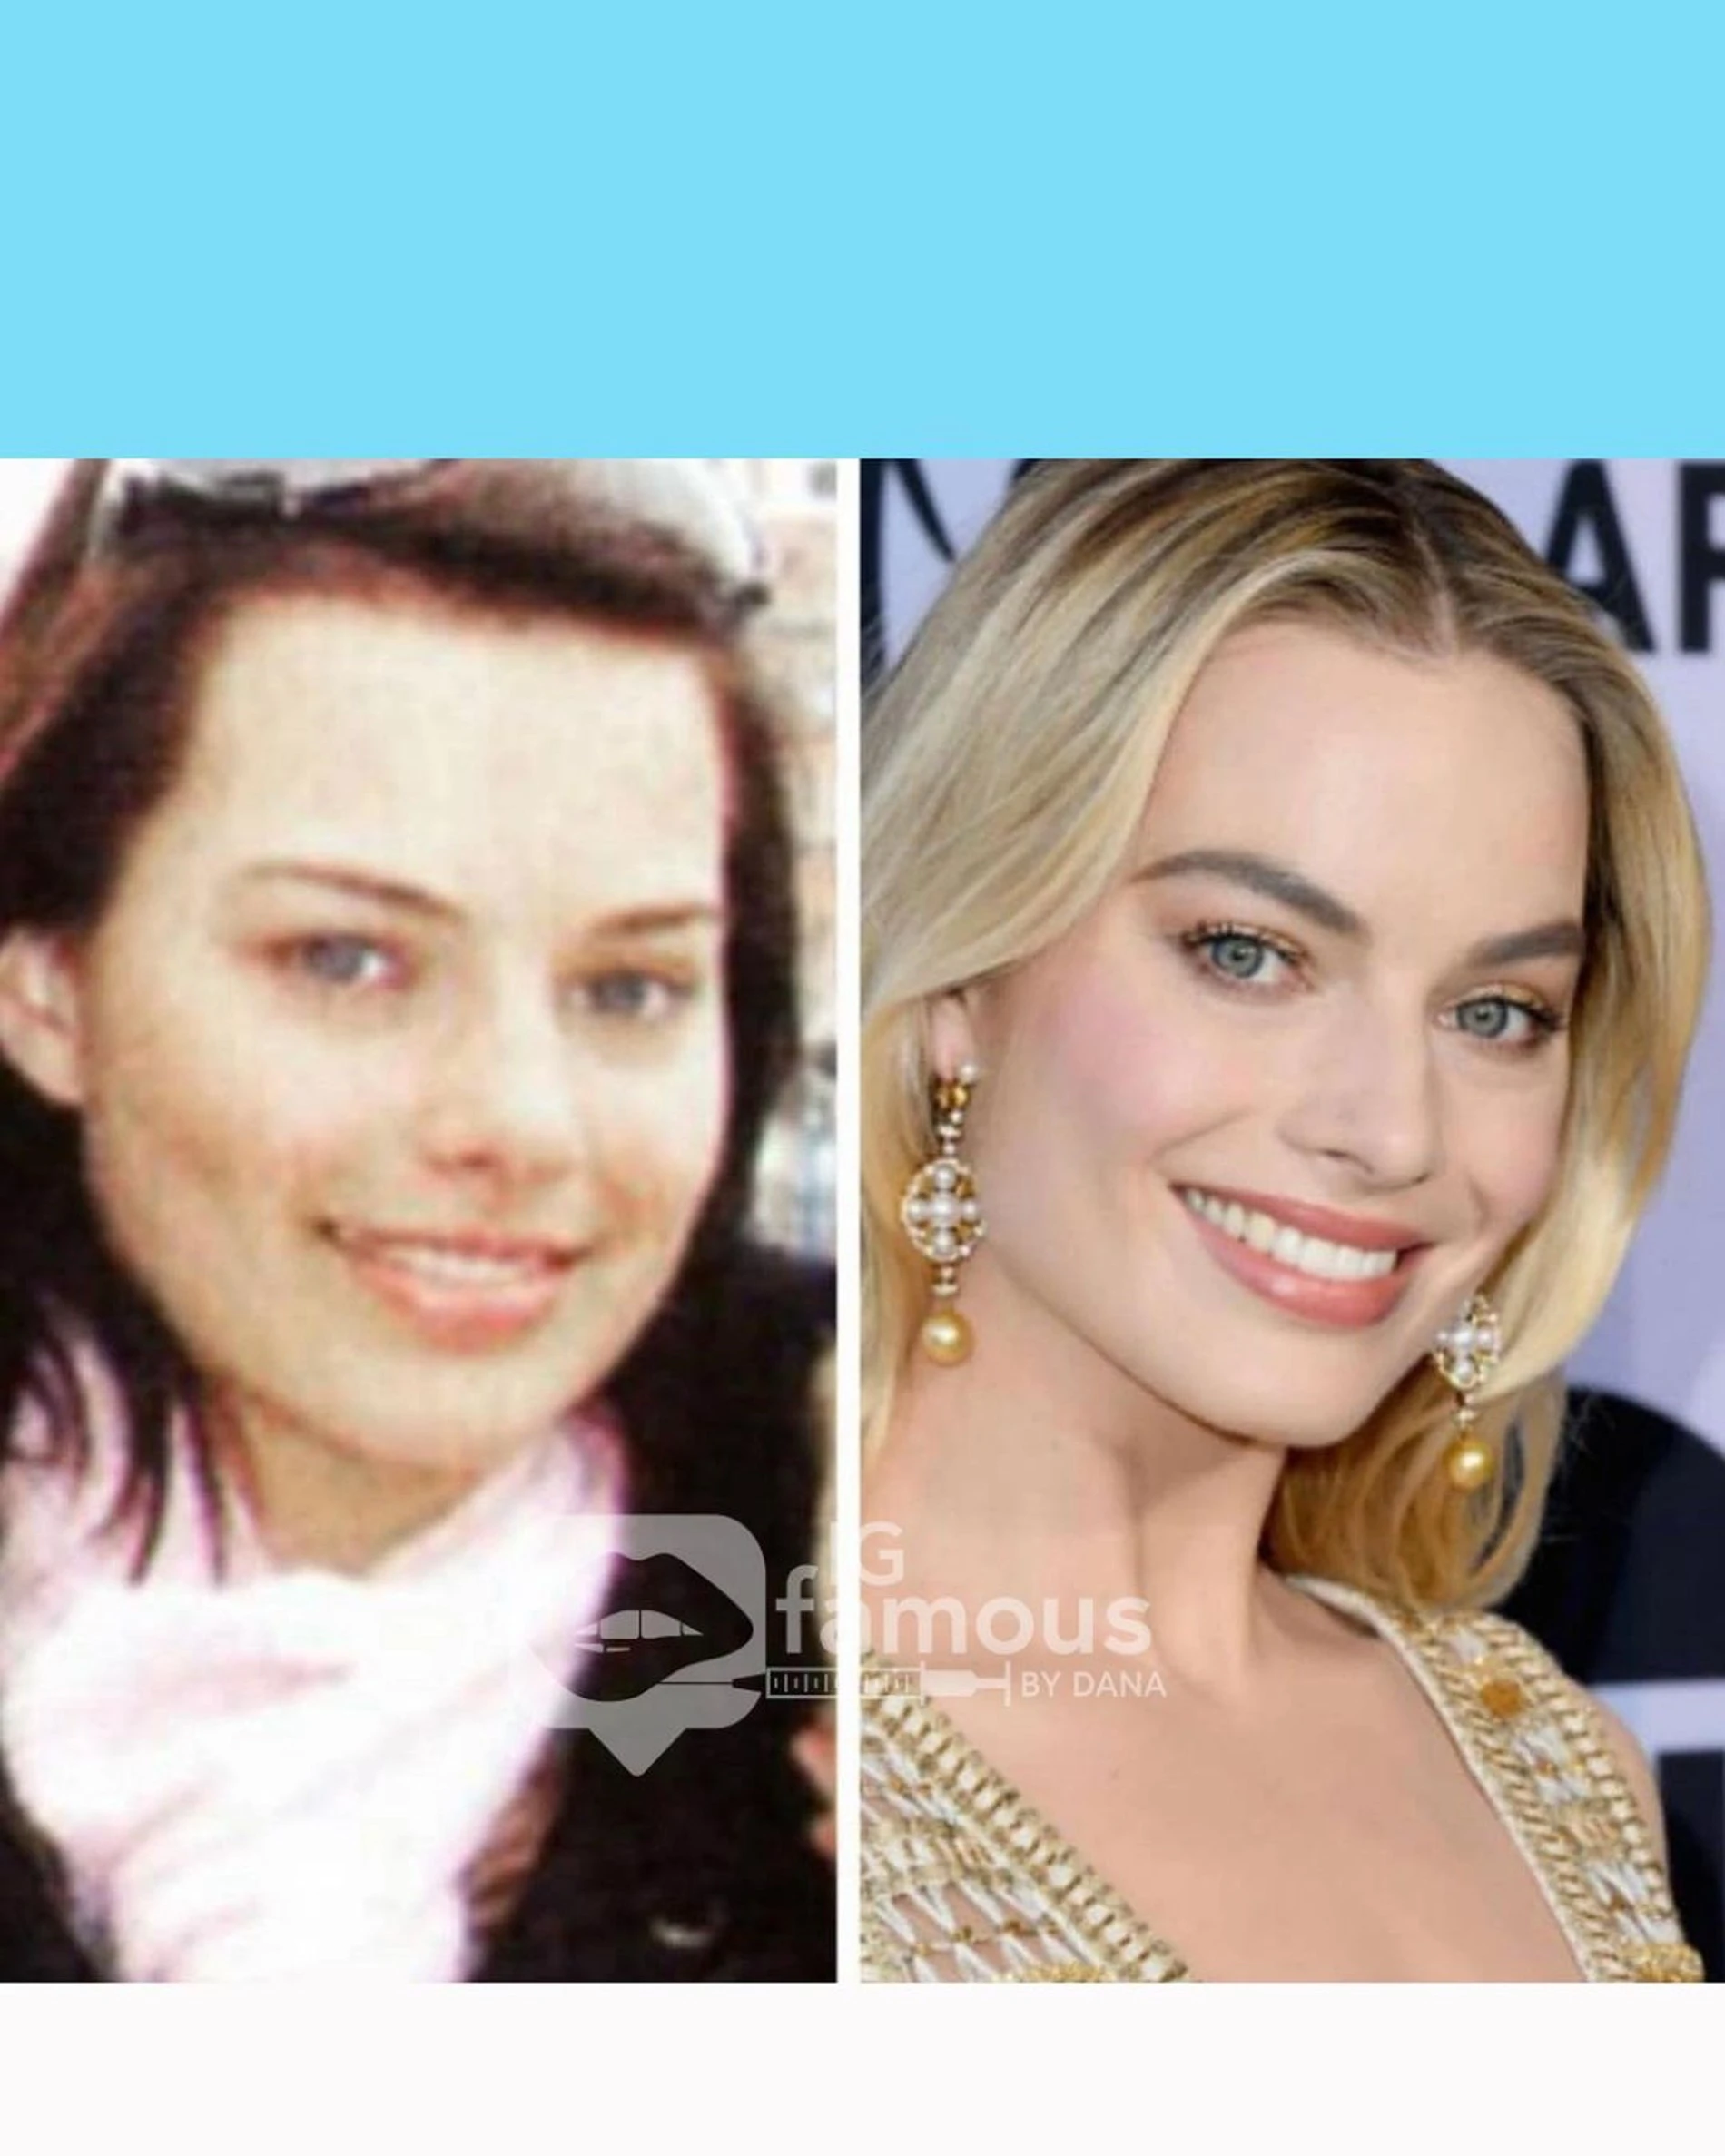 Марго Робби до и после изменений во внешности. Фото: Инстаграм* @igfamousbydana